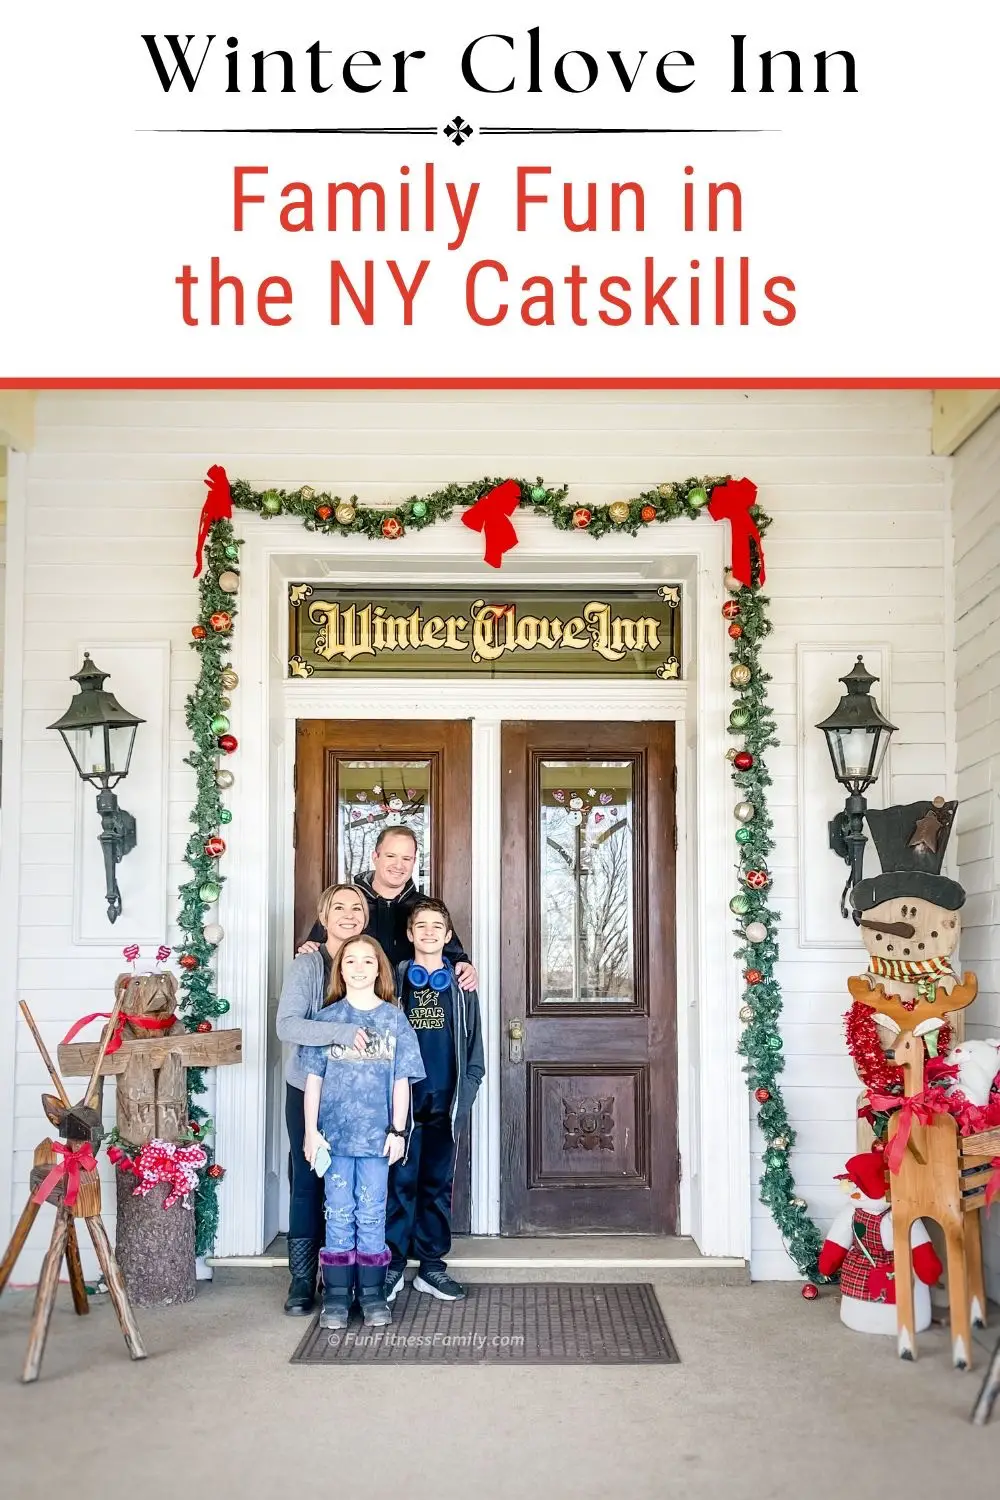 Catskills NY spring getaway - Winter Clove Inn